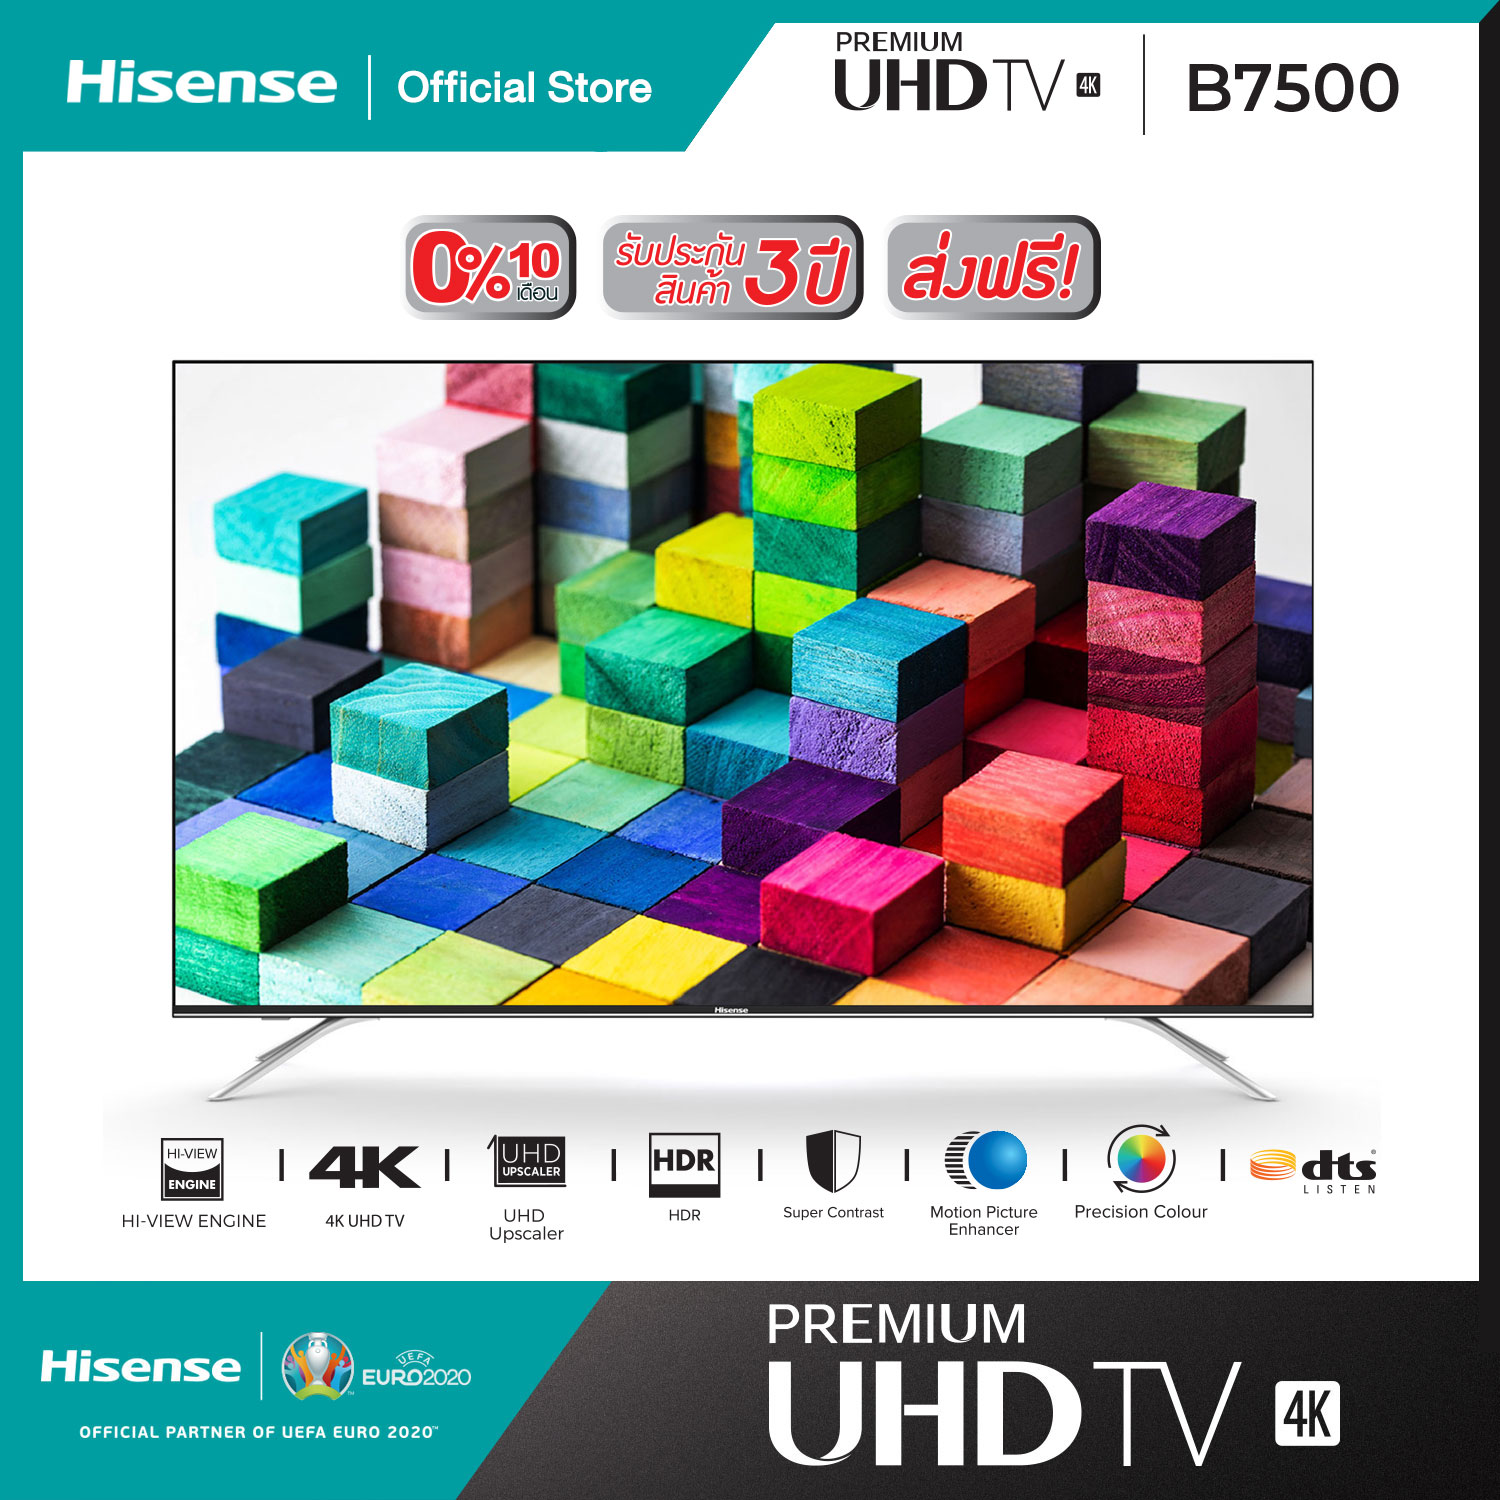 ทีวี Hisense Premium UHD SmartTV ขนาด 65 นิ้ว รุ่น 65B7500 โมเดล 2019